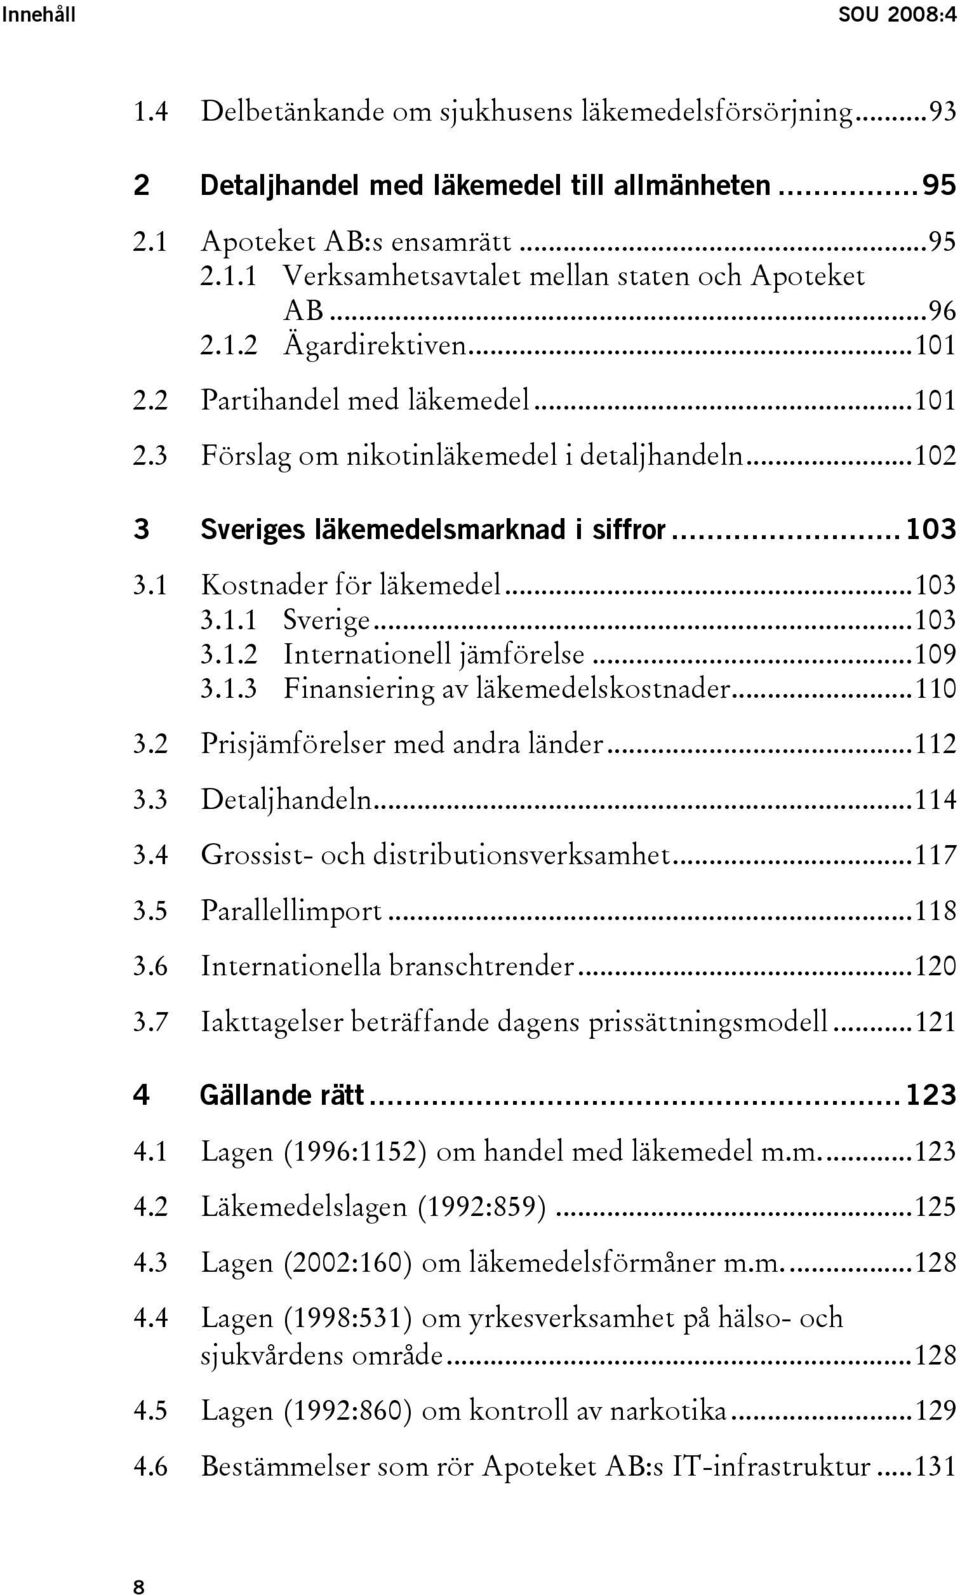 ..103 3.1.1 Sverige...103 3.1.2 Internationell jämförelse...109 3.1.3 Finansiering av läkemedelskostnader...110 3.2 Prisjämförelser med andra länder...112 3.3 Detaljhandeln...114 3.